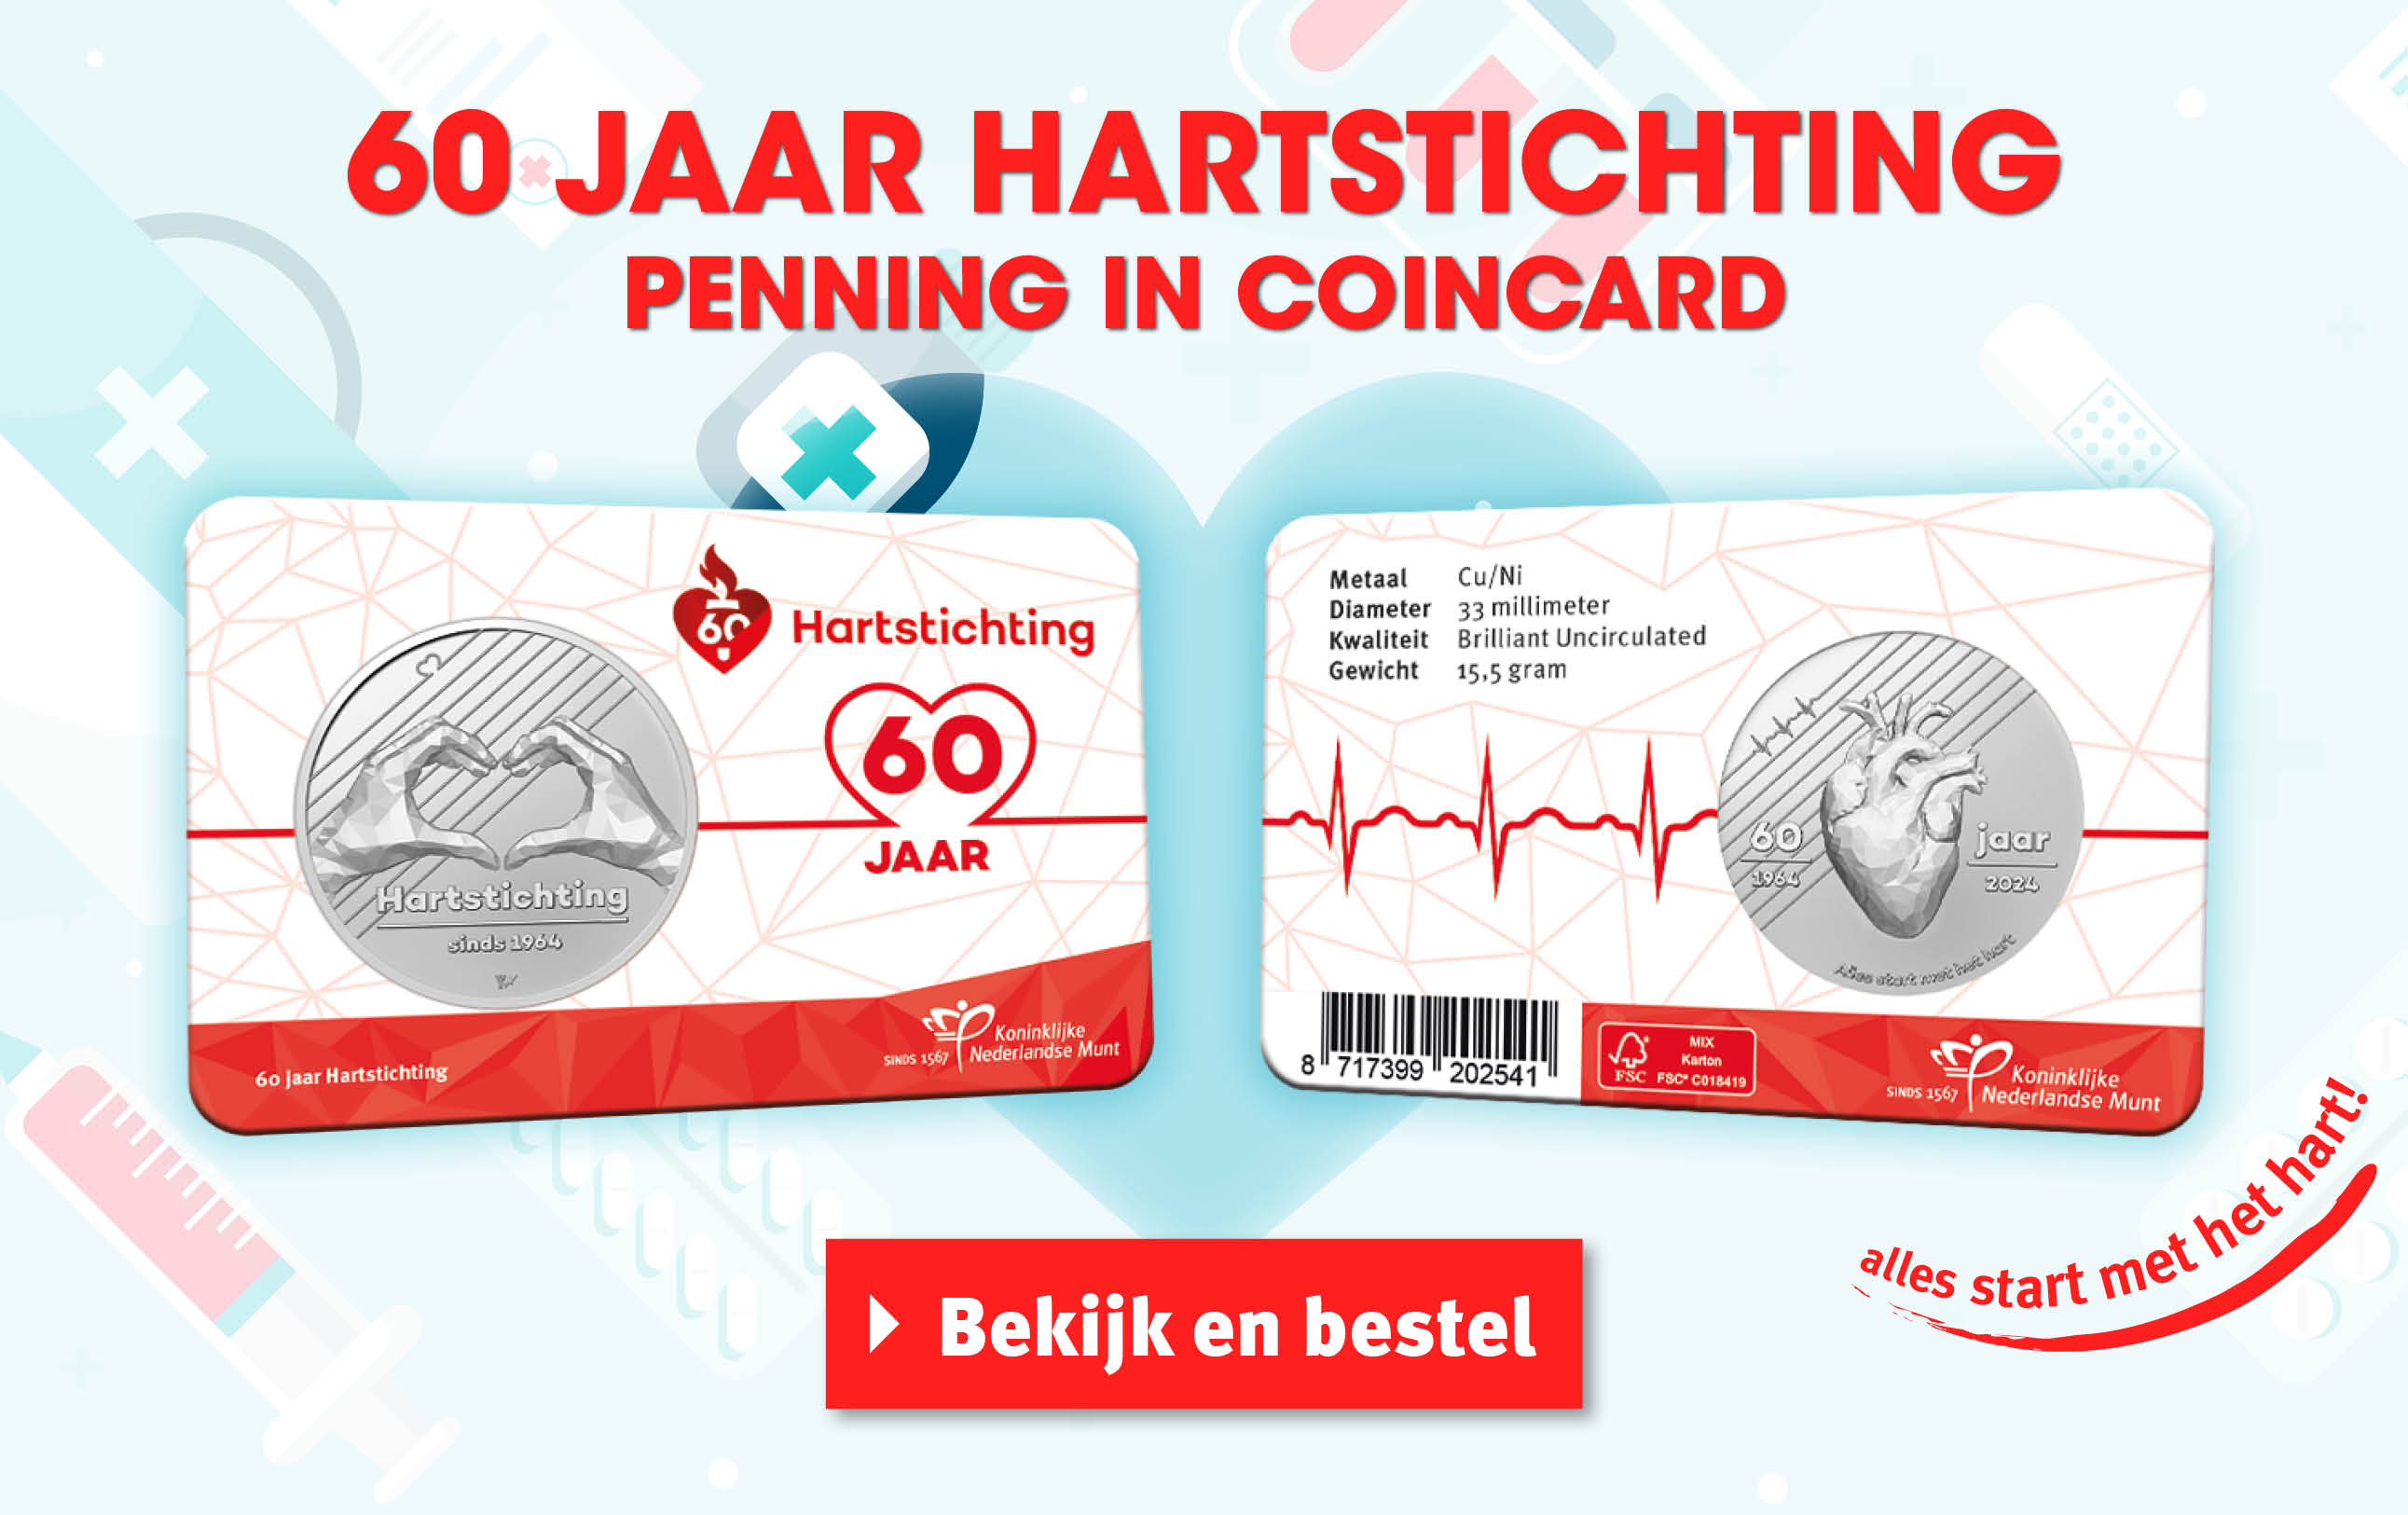 Bekijk en bestel: 60 jaar Hartstichting penning in coincard